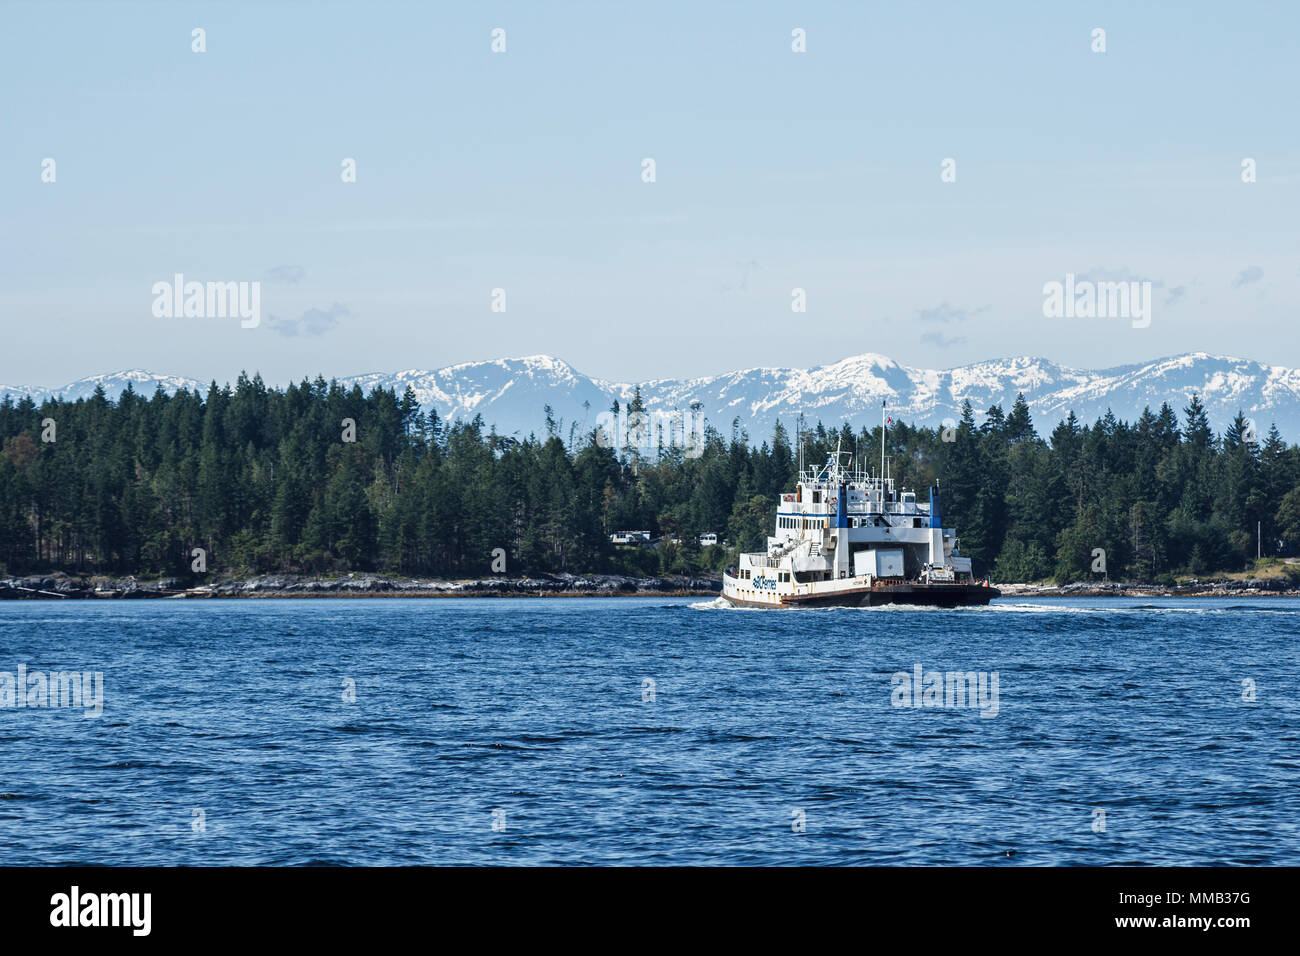 En un brillante día de verano, el buque "BC Ferries North Island Princess' se aproxima a la isla Texada, con los picos nevados de rango más allá de la costa. Foto de stock